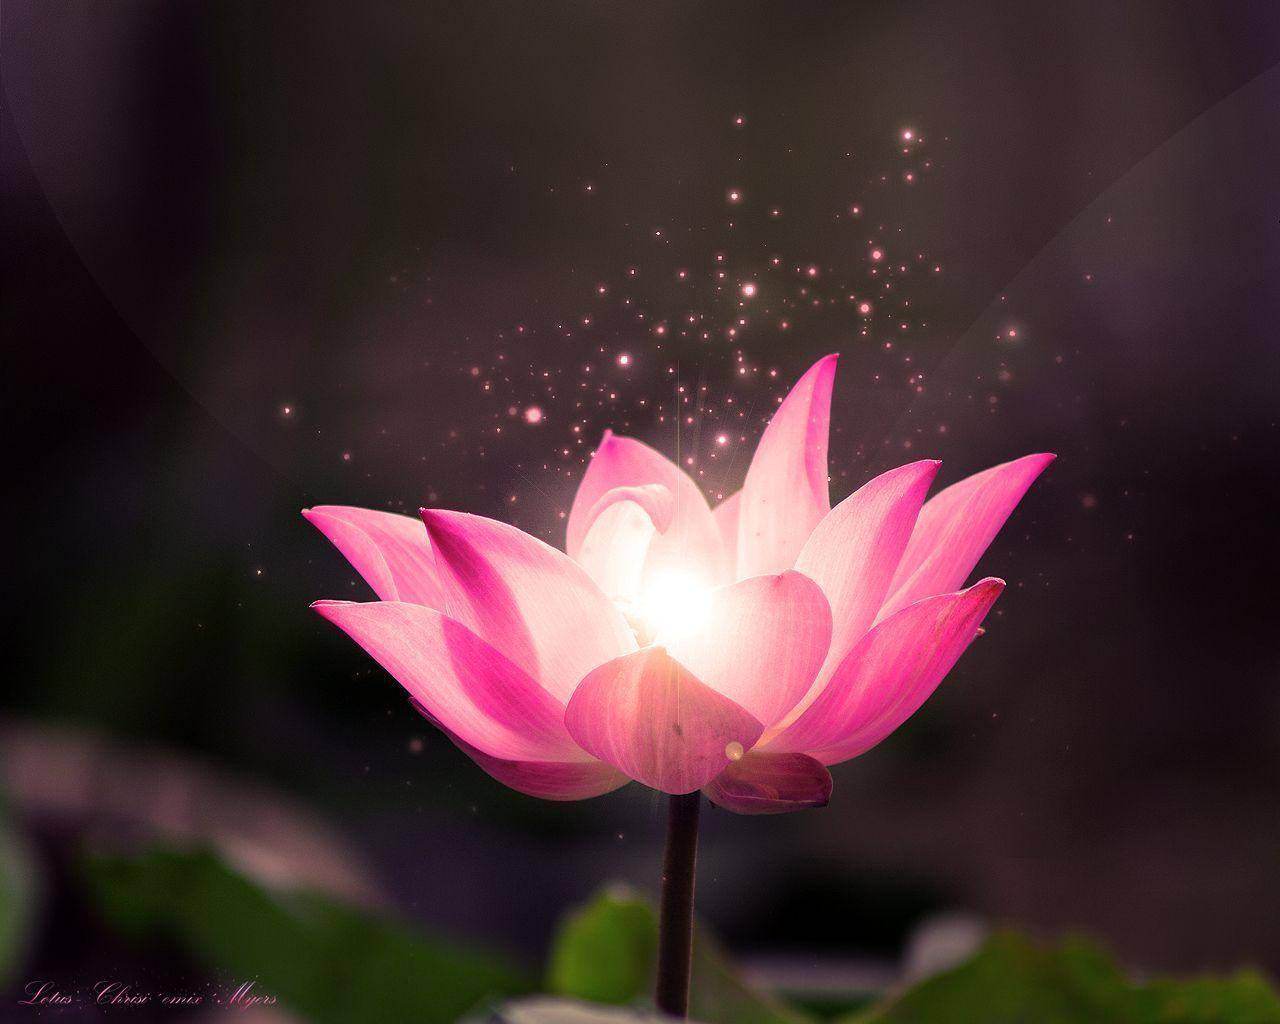 lotus flower image free